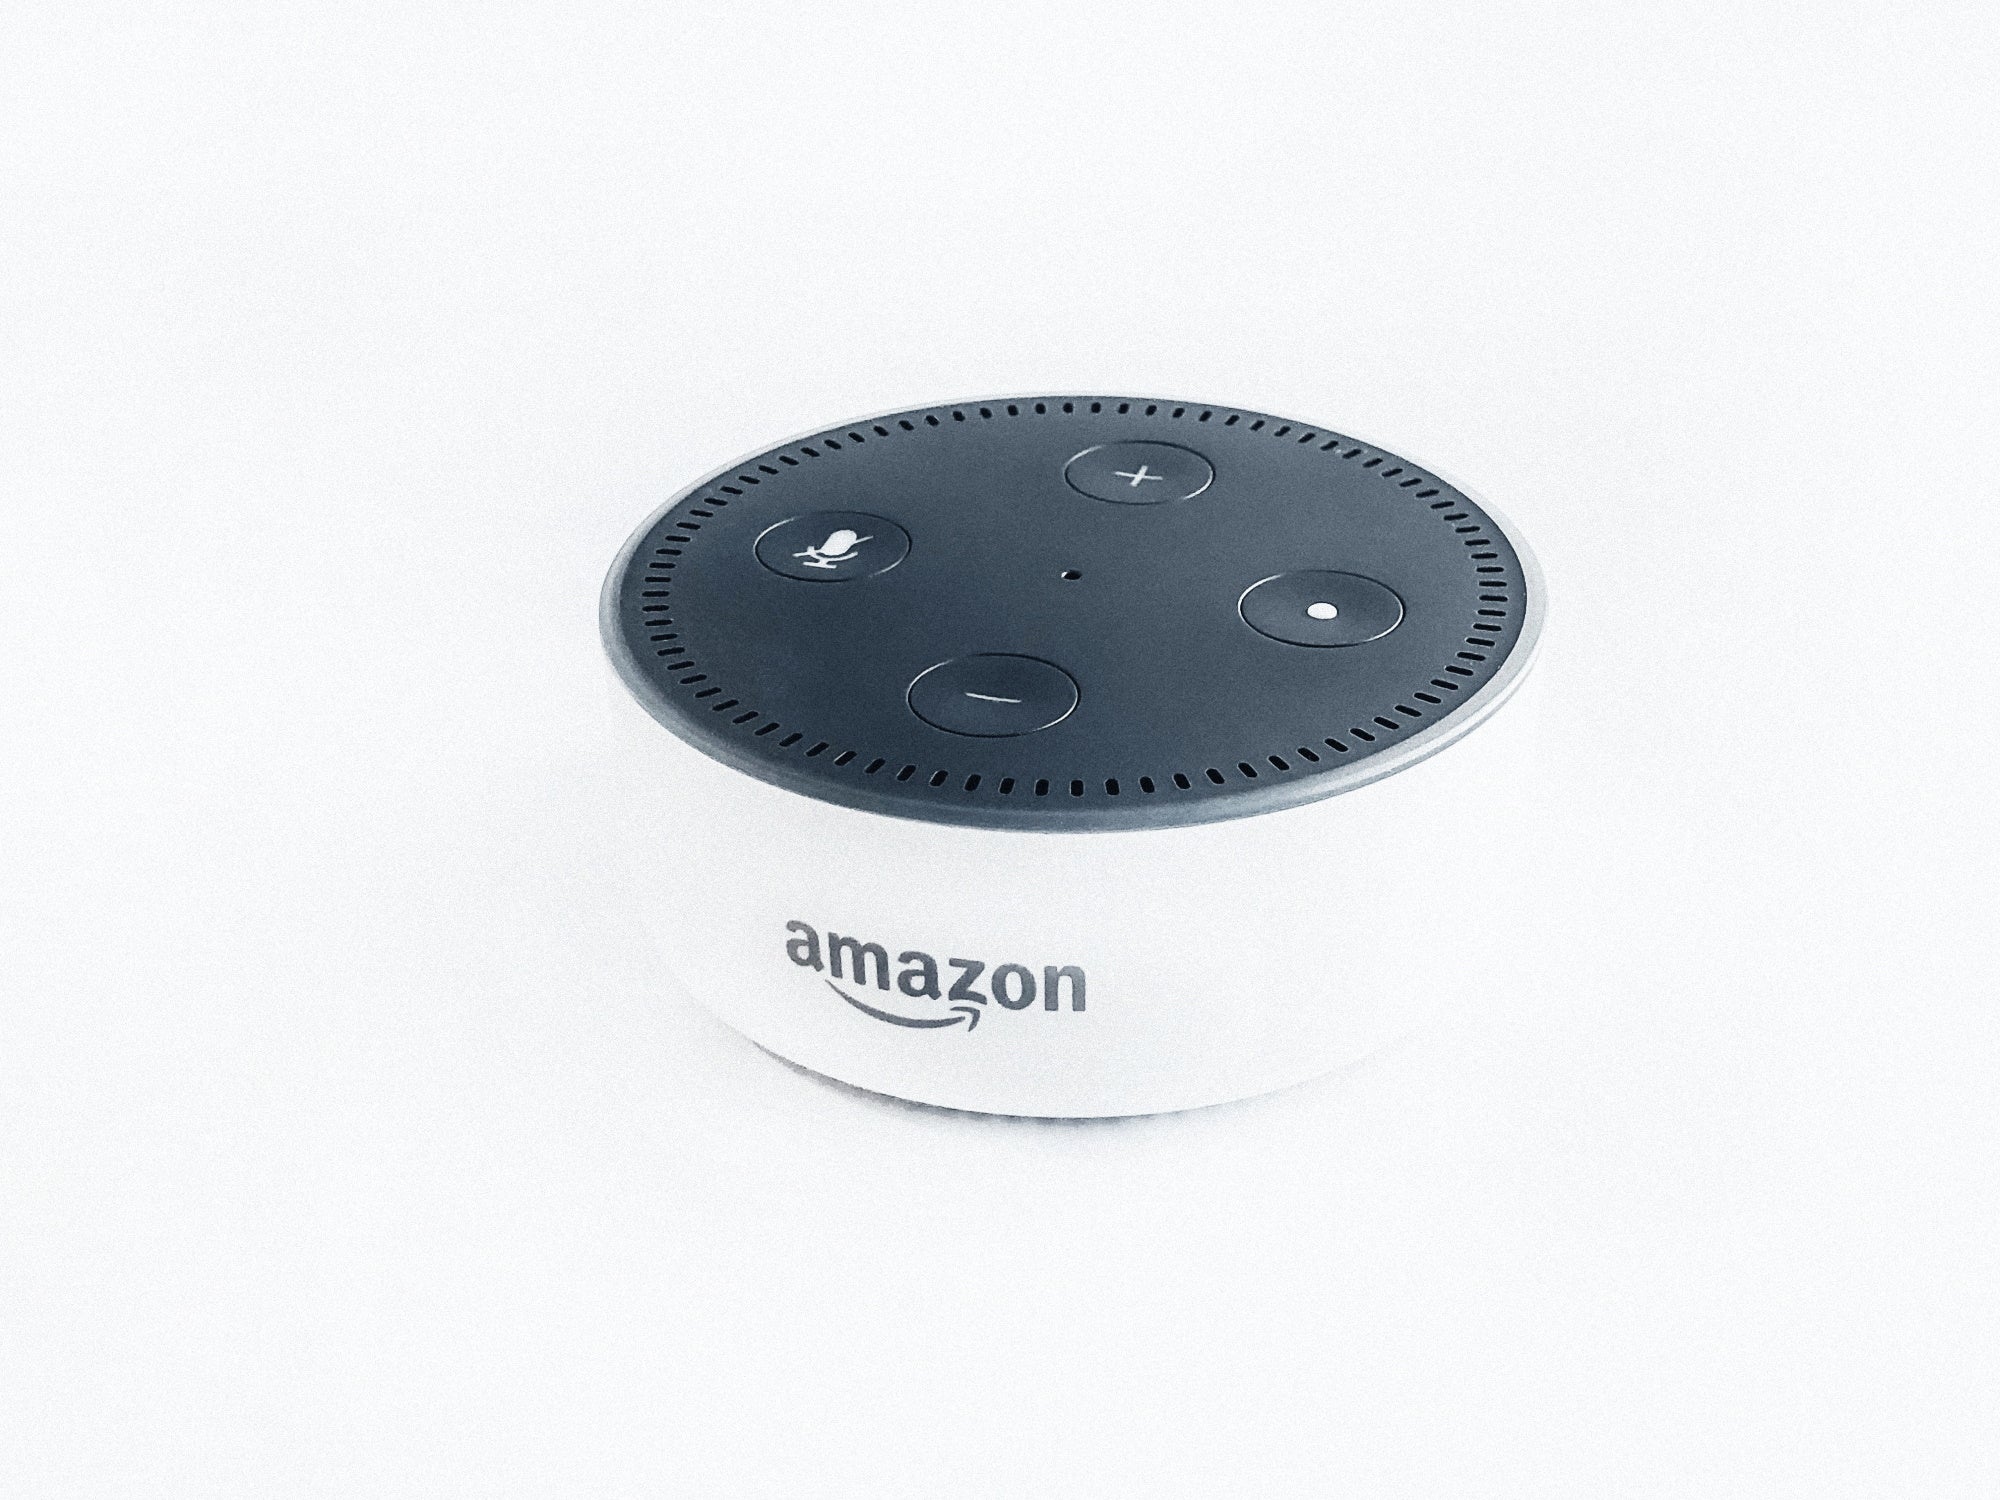 Amazon Echo Dot device on white background